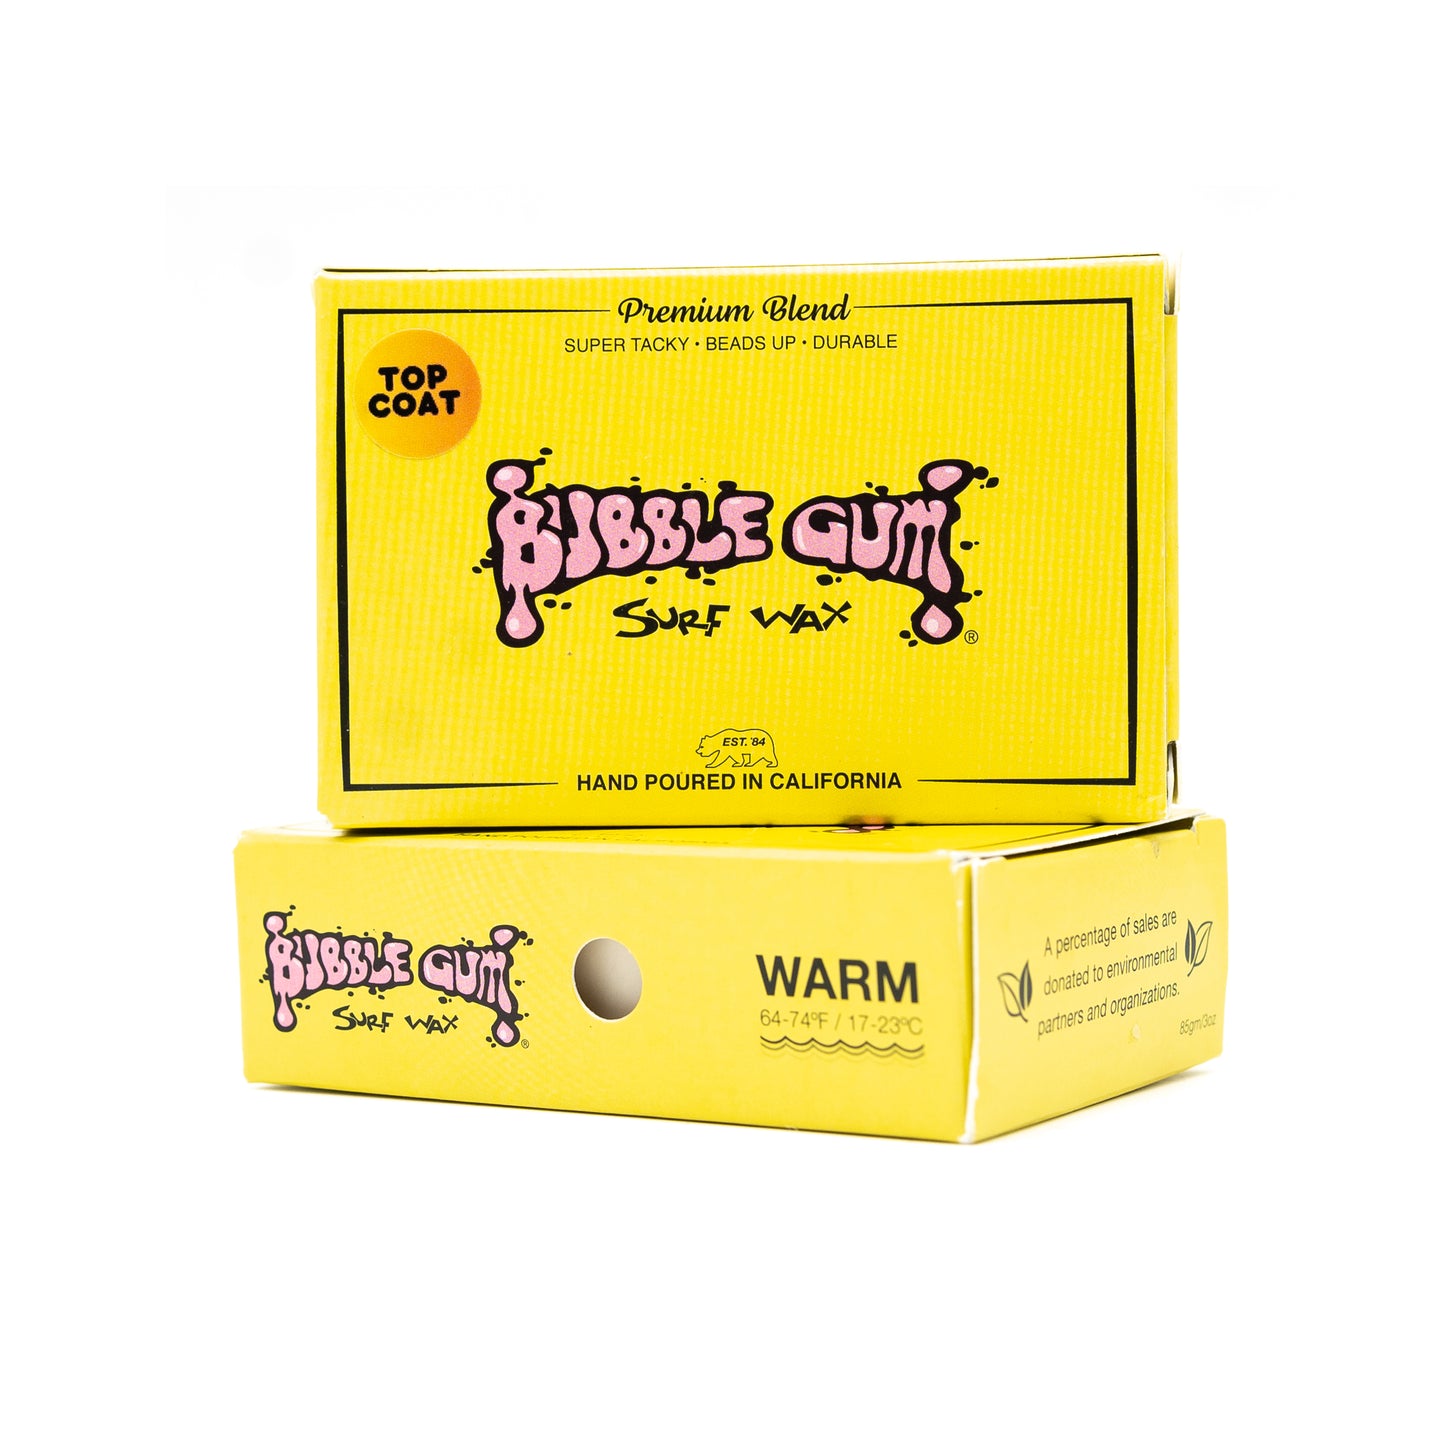 Bubble Gum Surf Wax Premium Blend - Warm 64°-74°